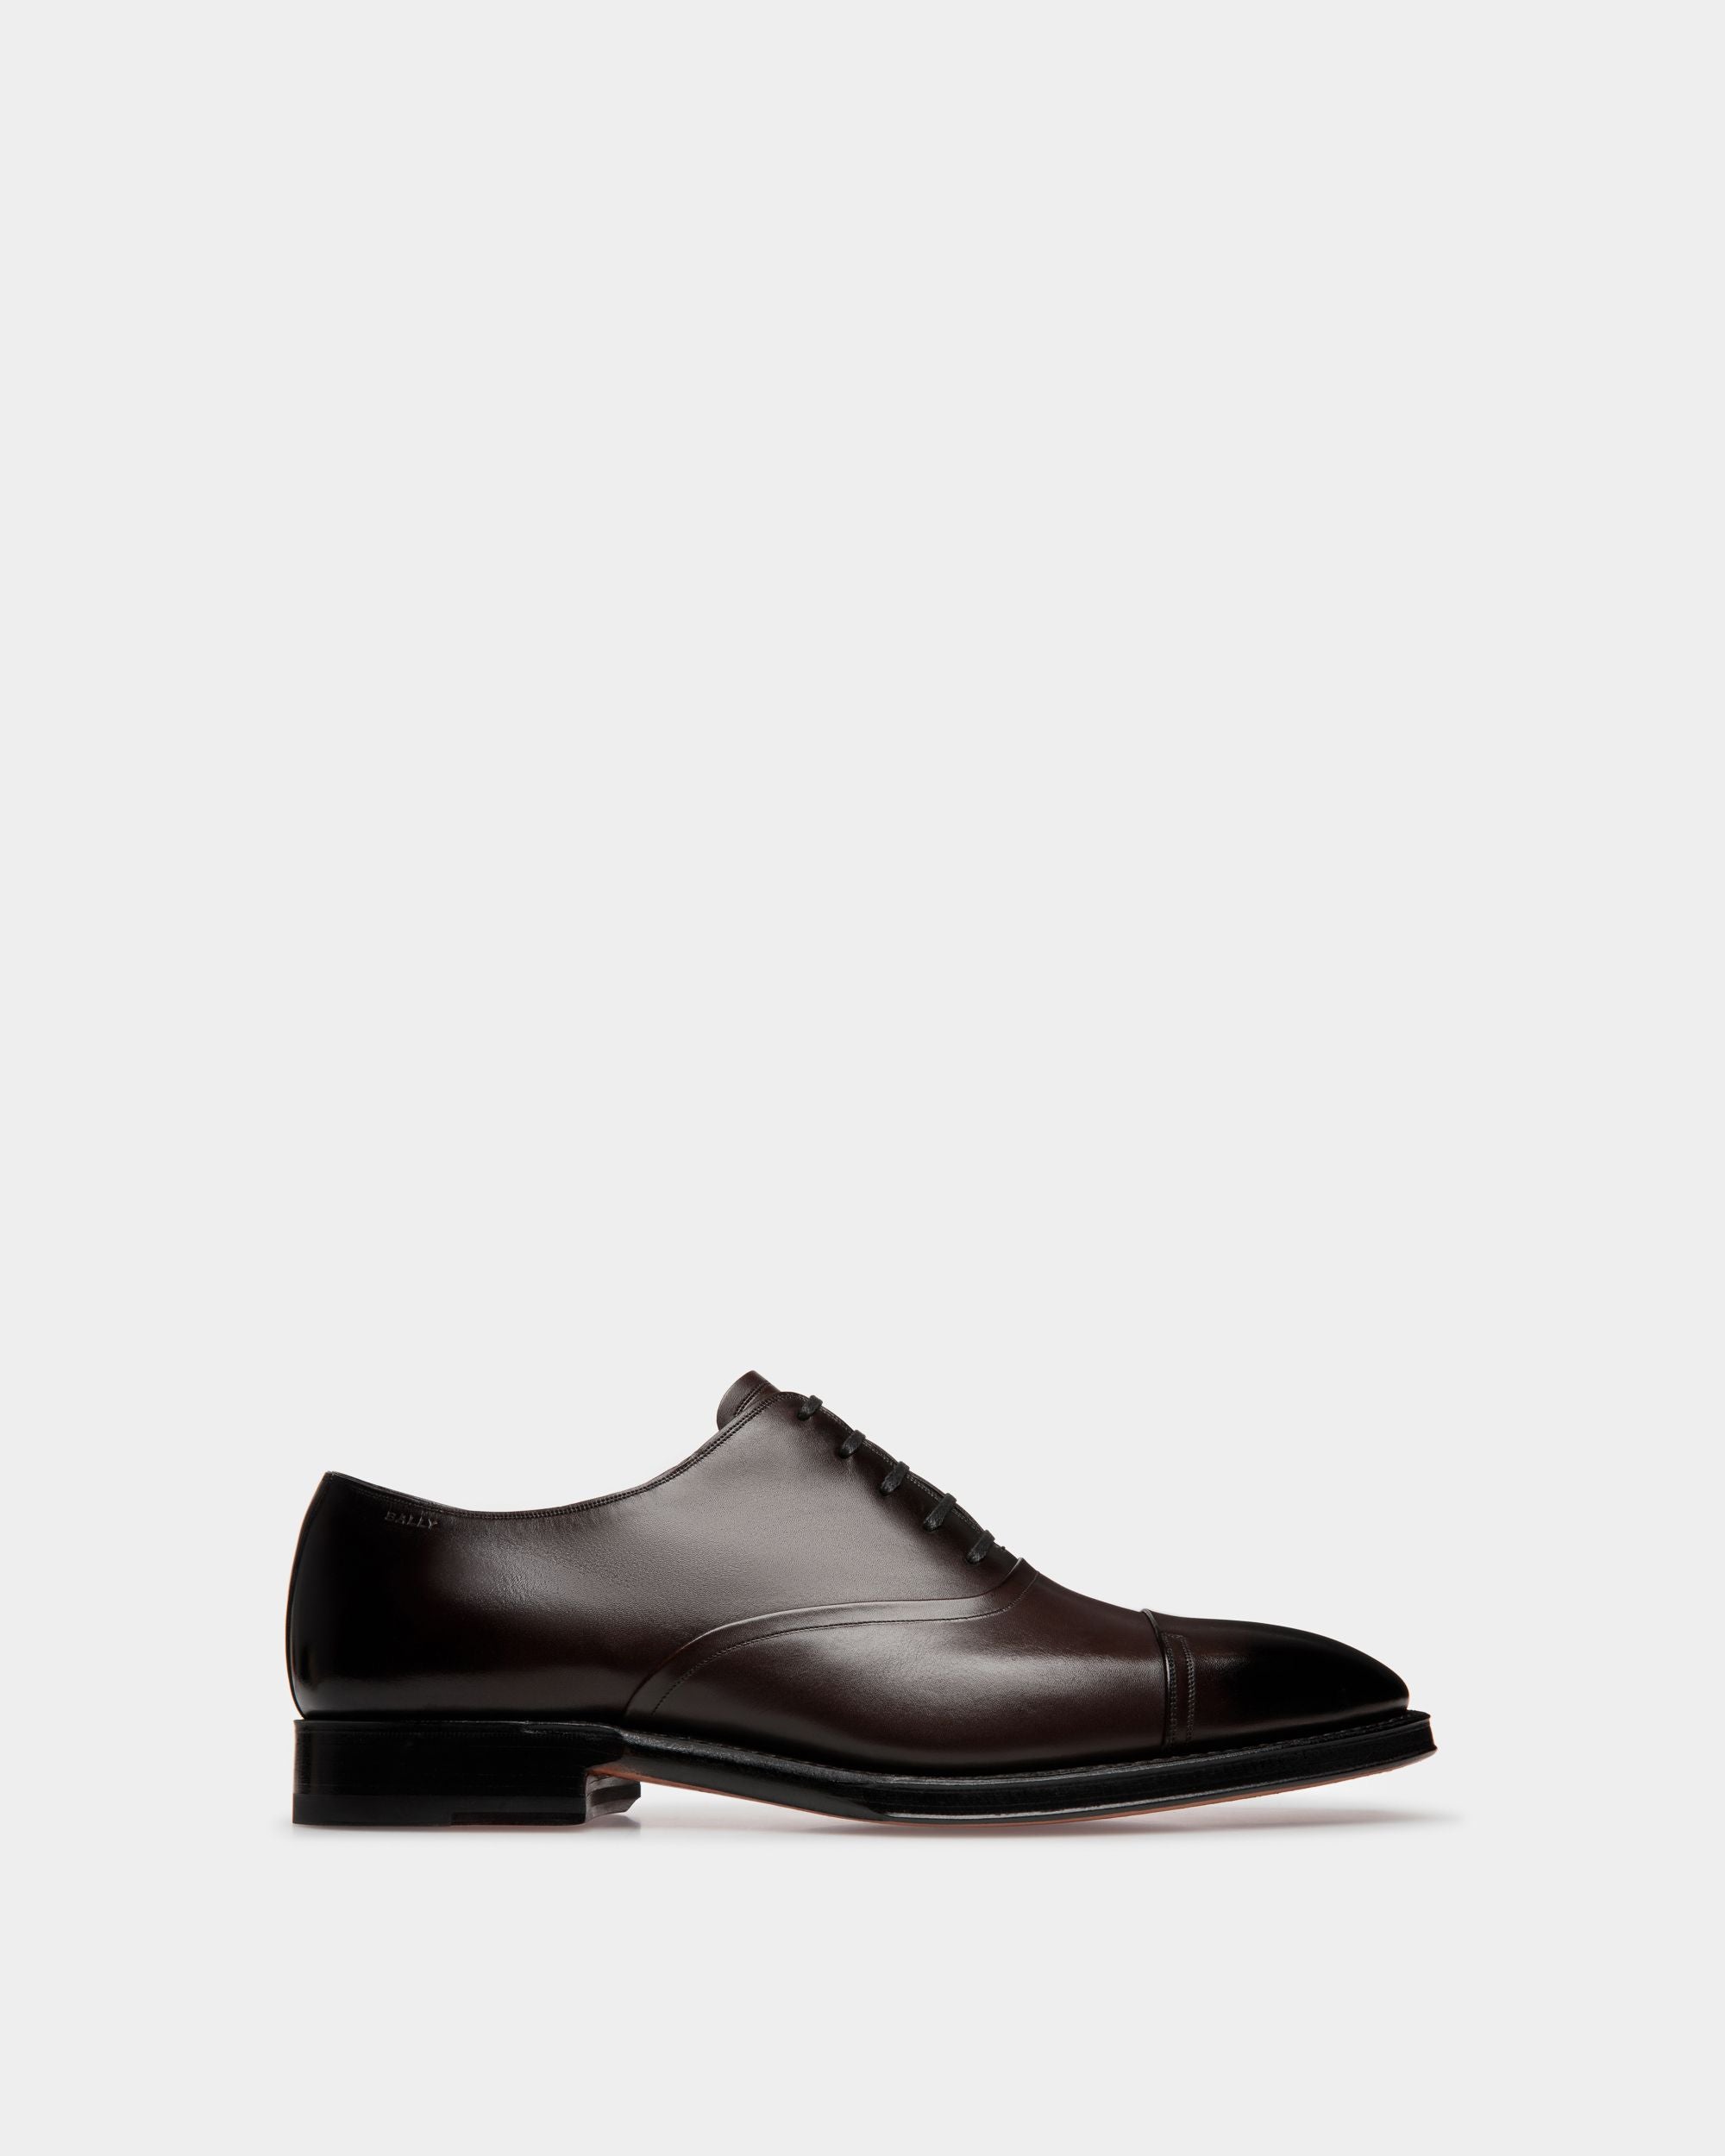 Selby | Oxford-Schuh für Herren | Braunes Leder | Bally | Still Life Seite